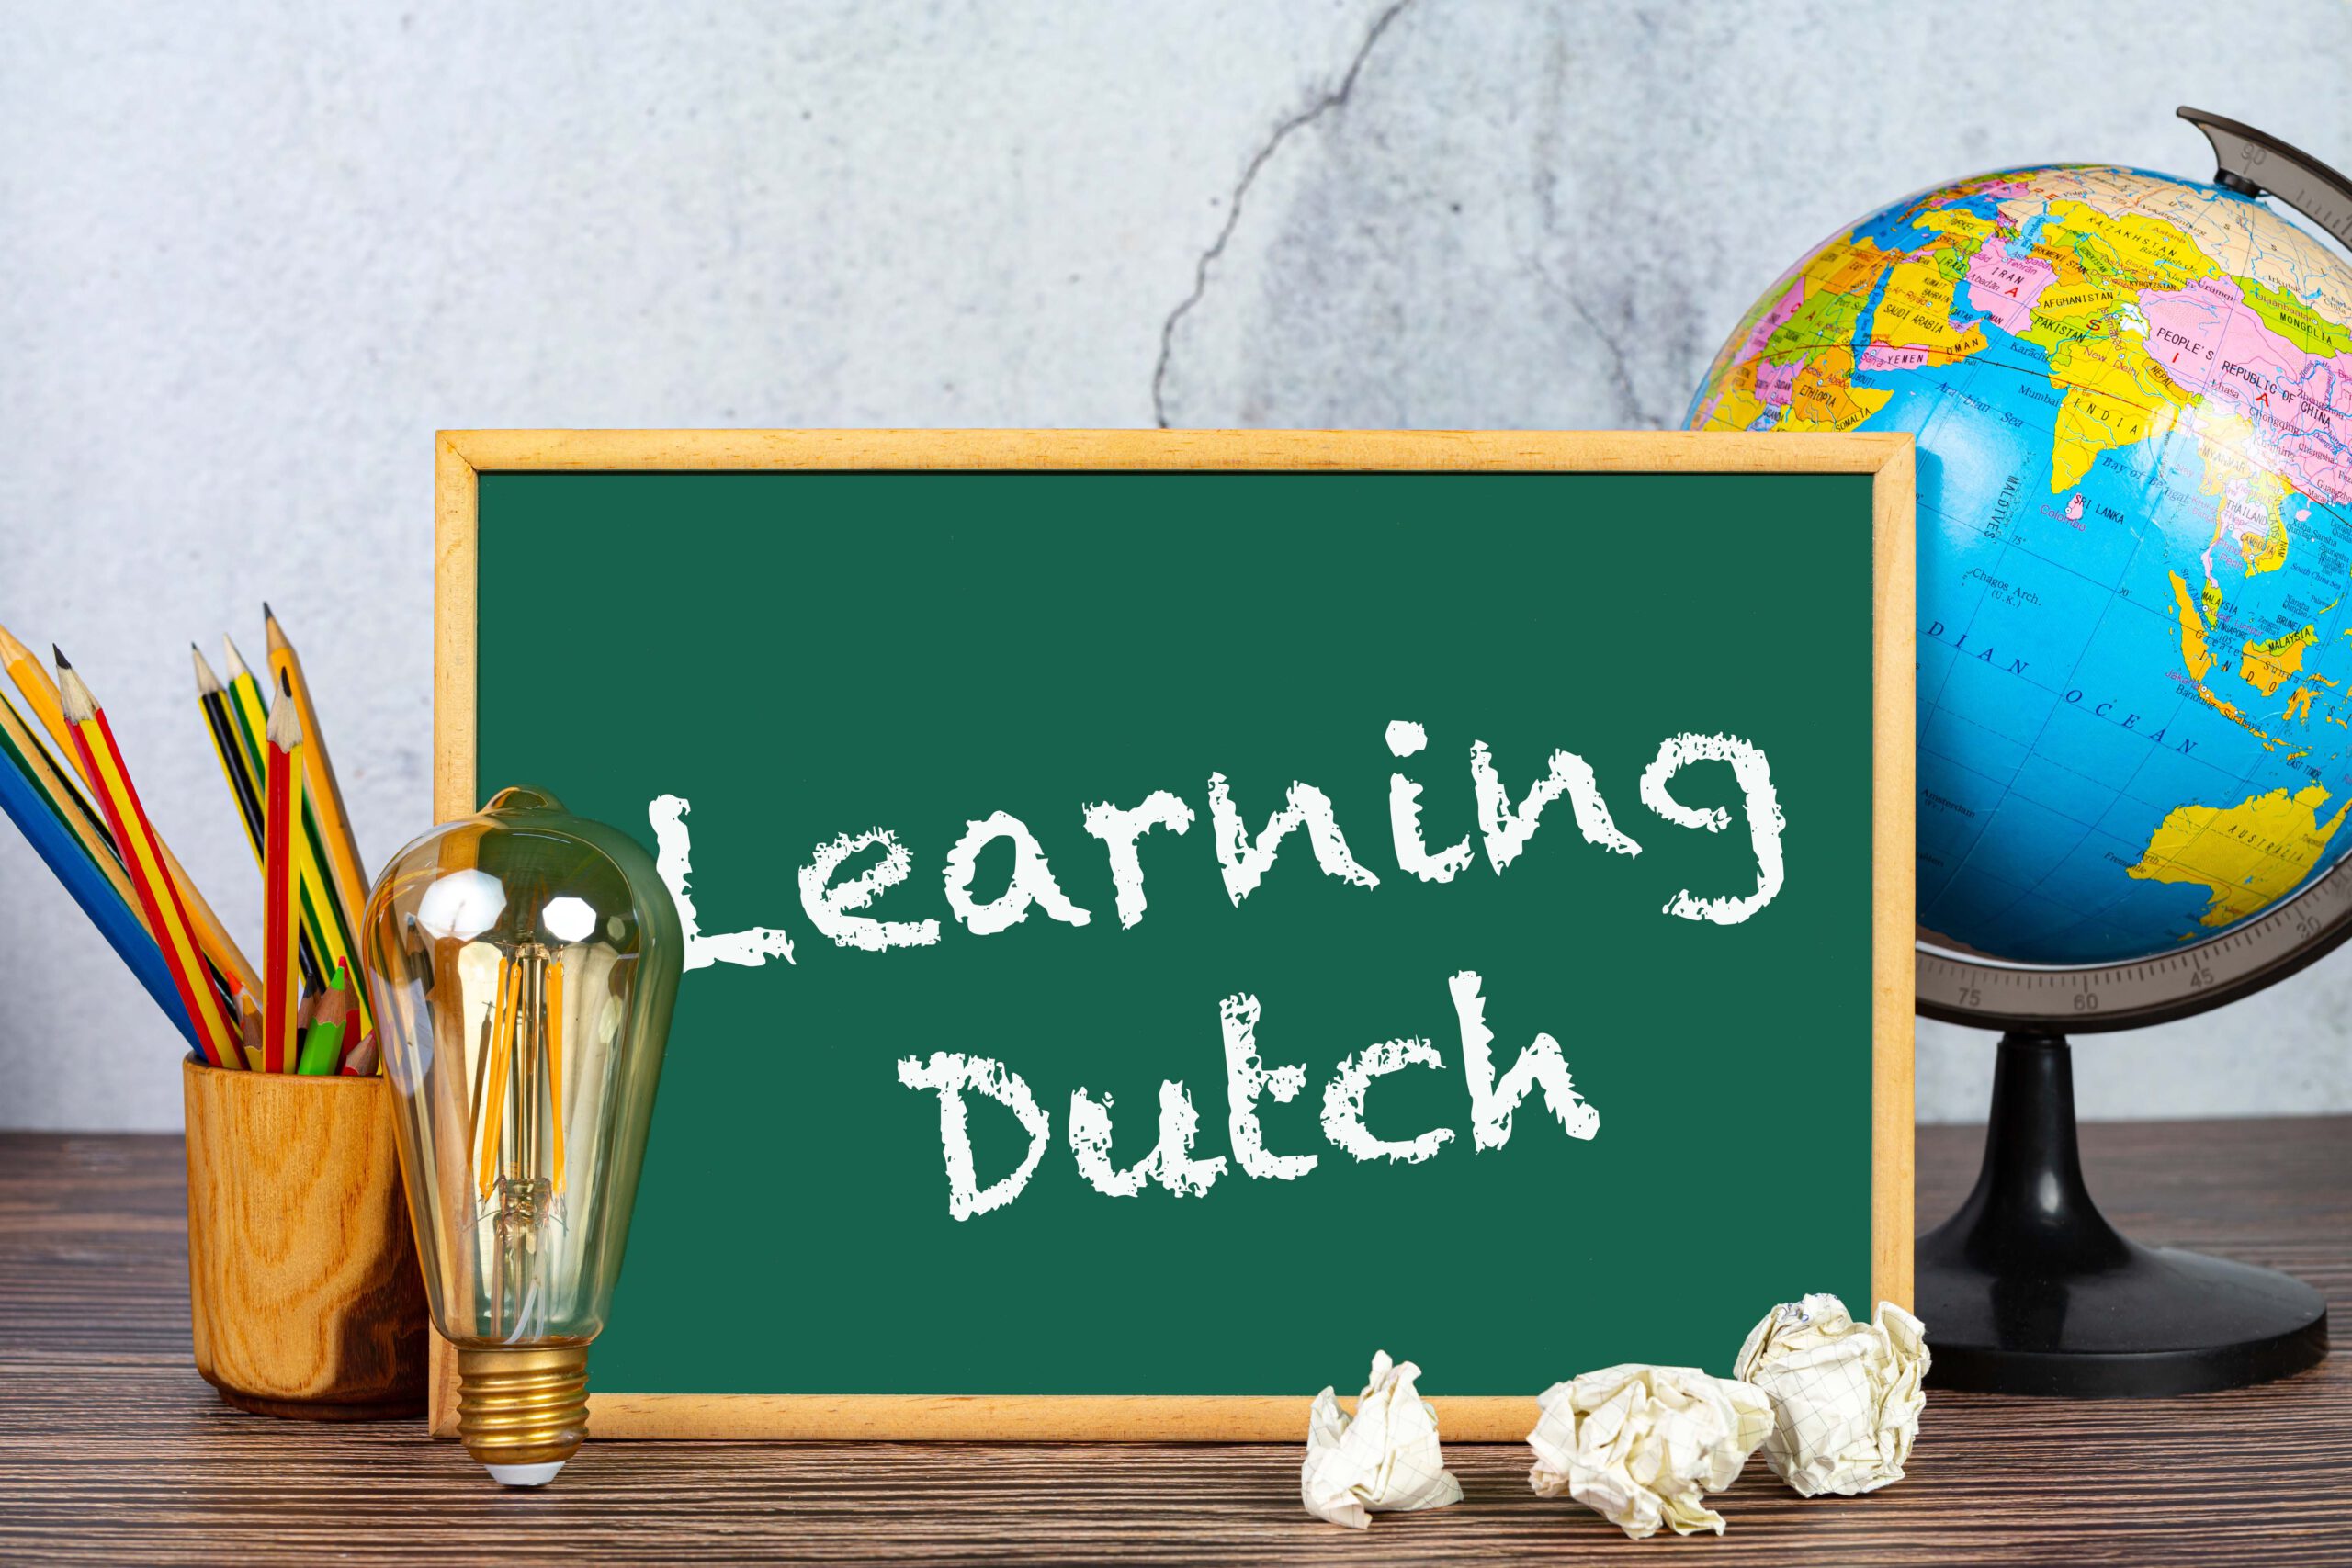 Mijn gast wil graag Nederlands leren. Waar kunnen we terecht?